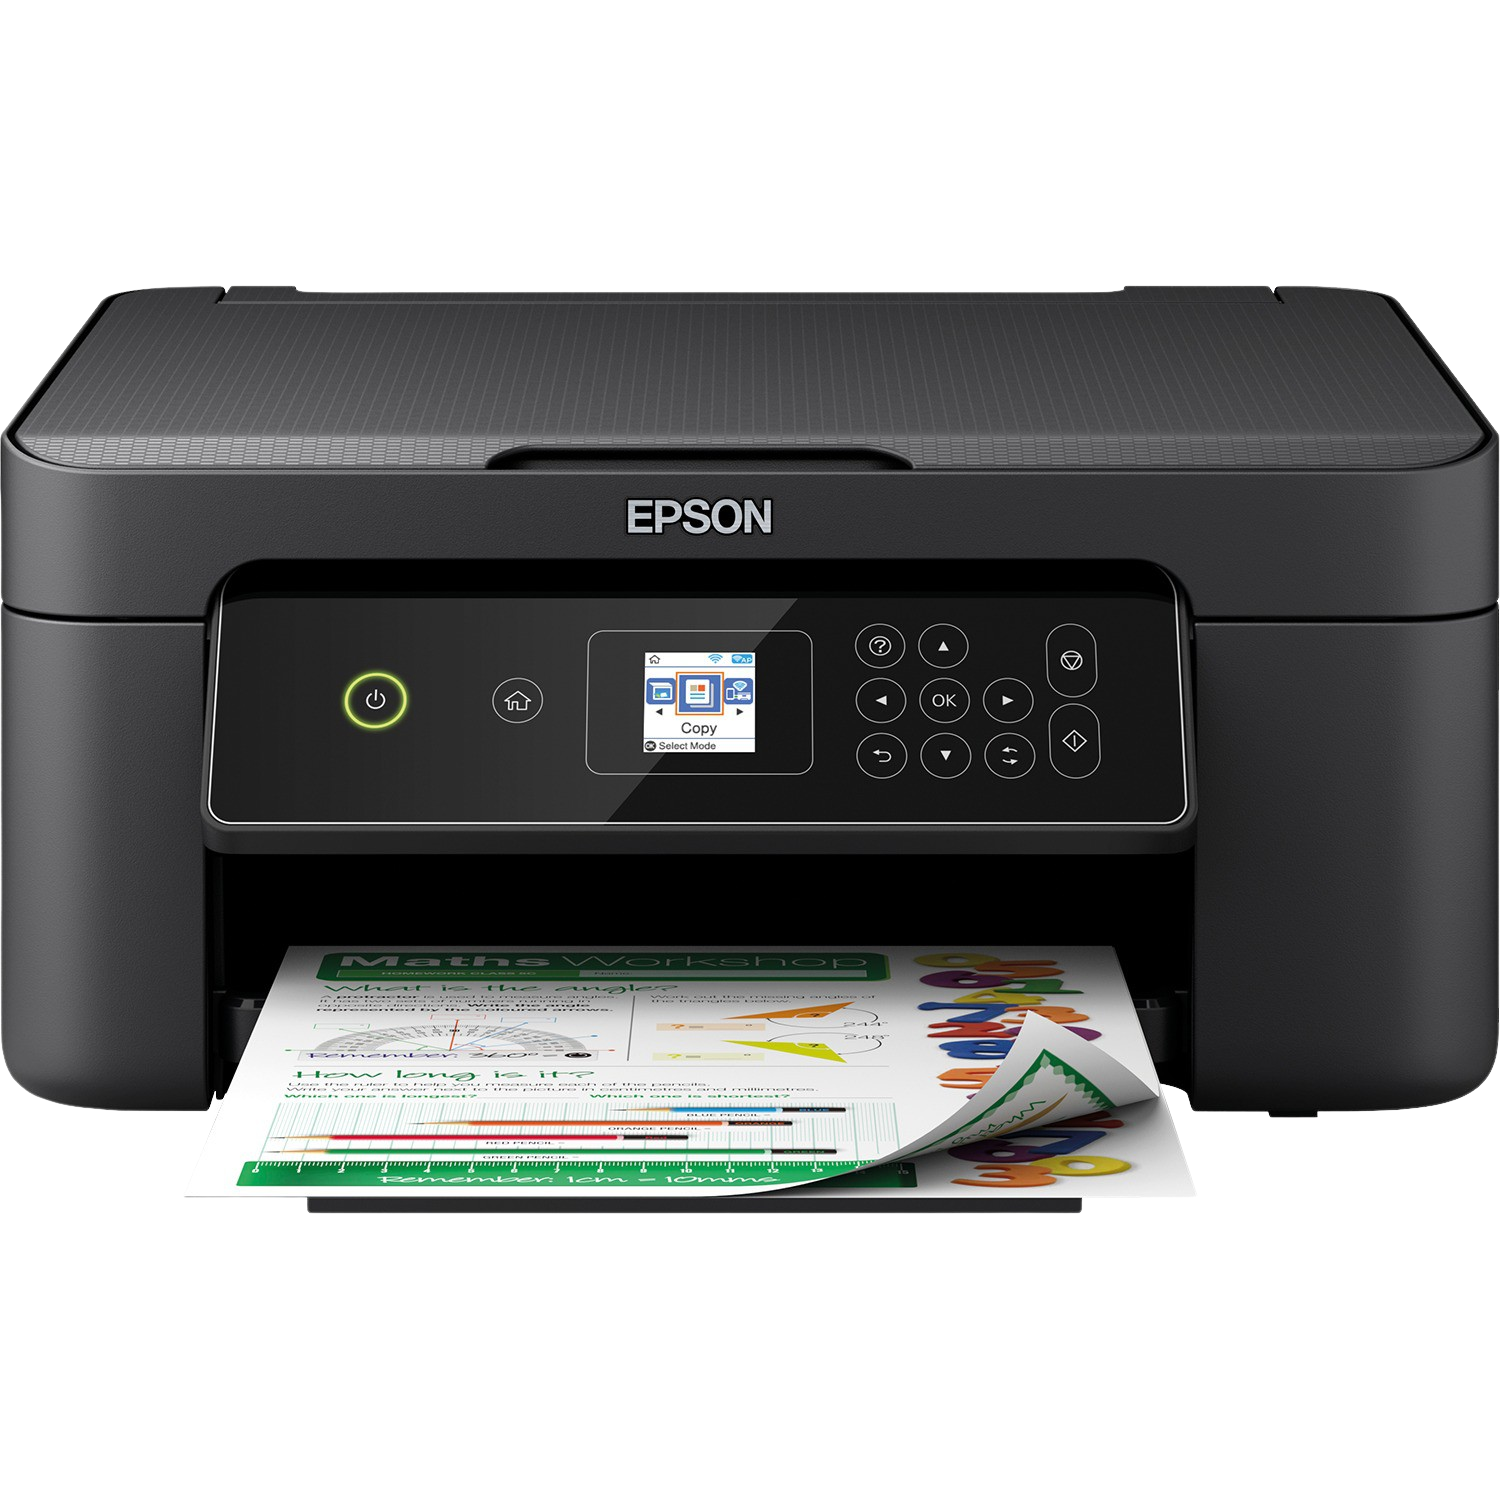 Impresora Tinta Epson expression home xp3150 wifi a4 con doble cara y pantalla lcd 3 en 1 copiadora mobile printing negro ‎epson 33 ppm 15 100